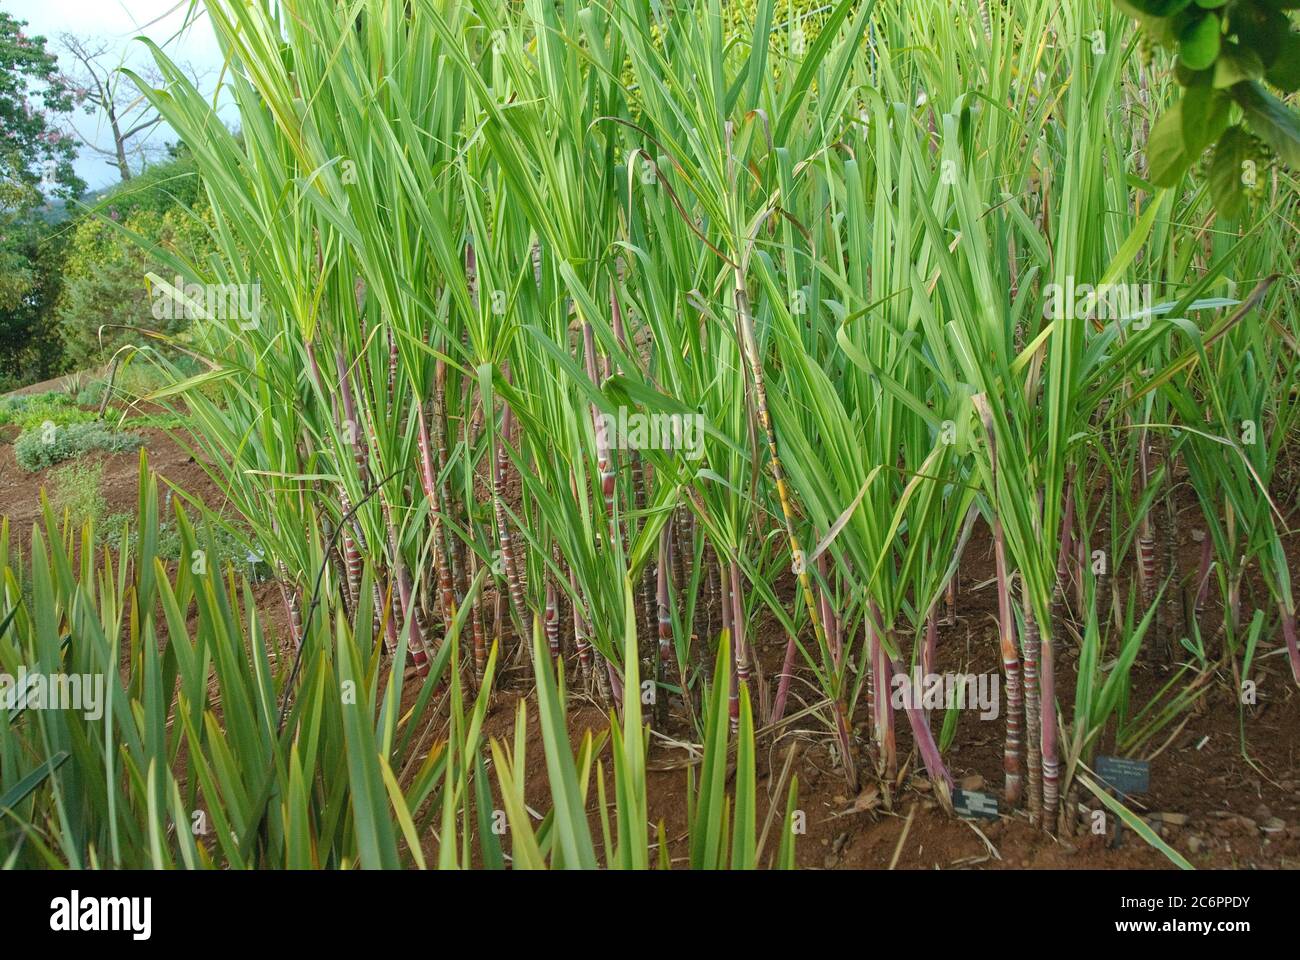 Zuckerrohr Saccharum officinarum, Sugar cane Saccharum officinarum Stock Photo